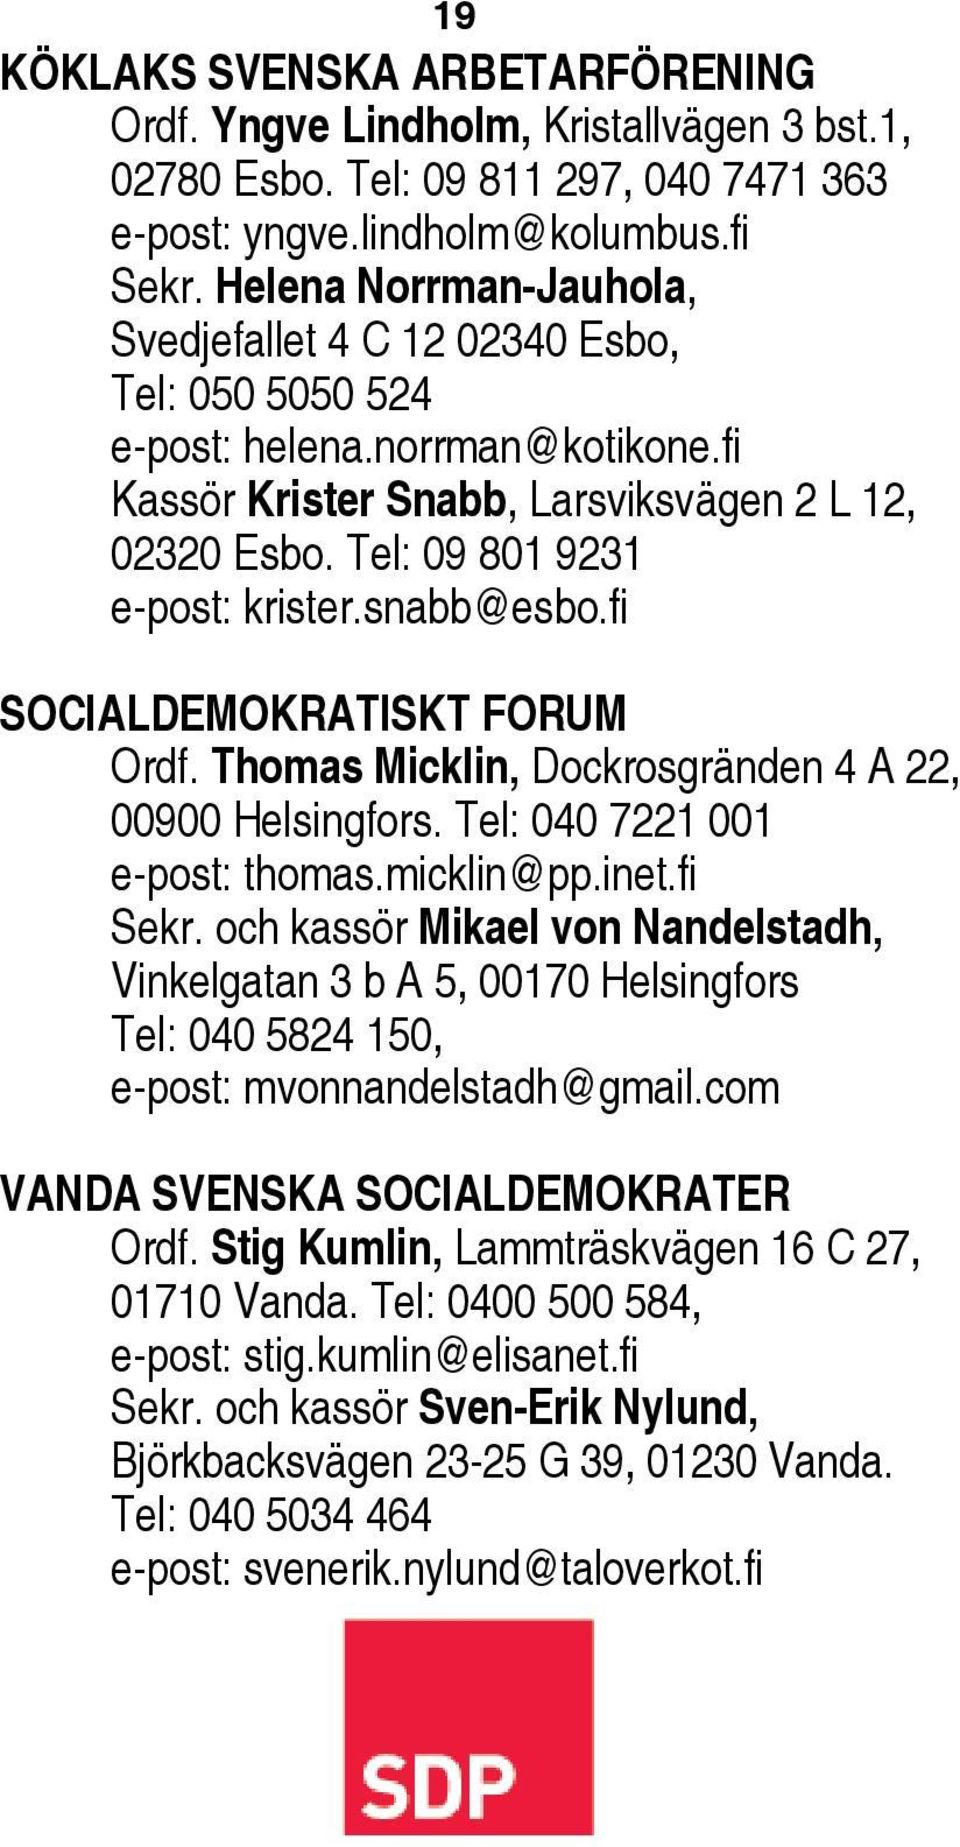 snabb@esbo.fi SOCIALDEMOKRATISKT FORUM Ordf. Thomas Micklin, Dockrosgränden 4 A 22, 00900 Helsingfors. Tel: 040 7221 001 e-post: thomas.micklin@pp.inet.fi Sekr.